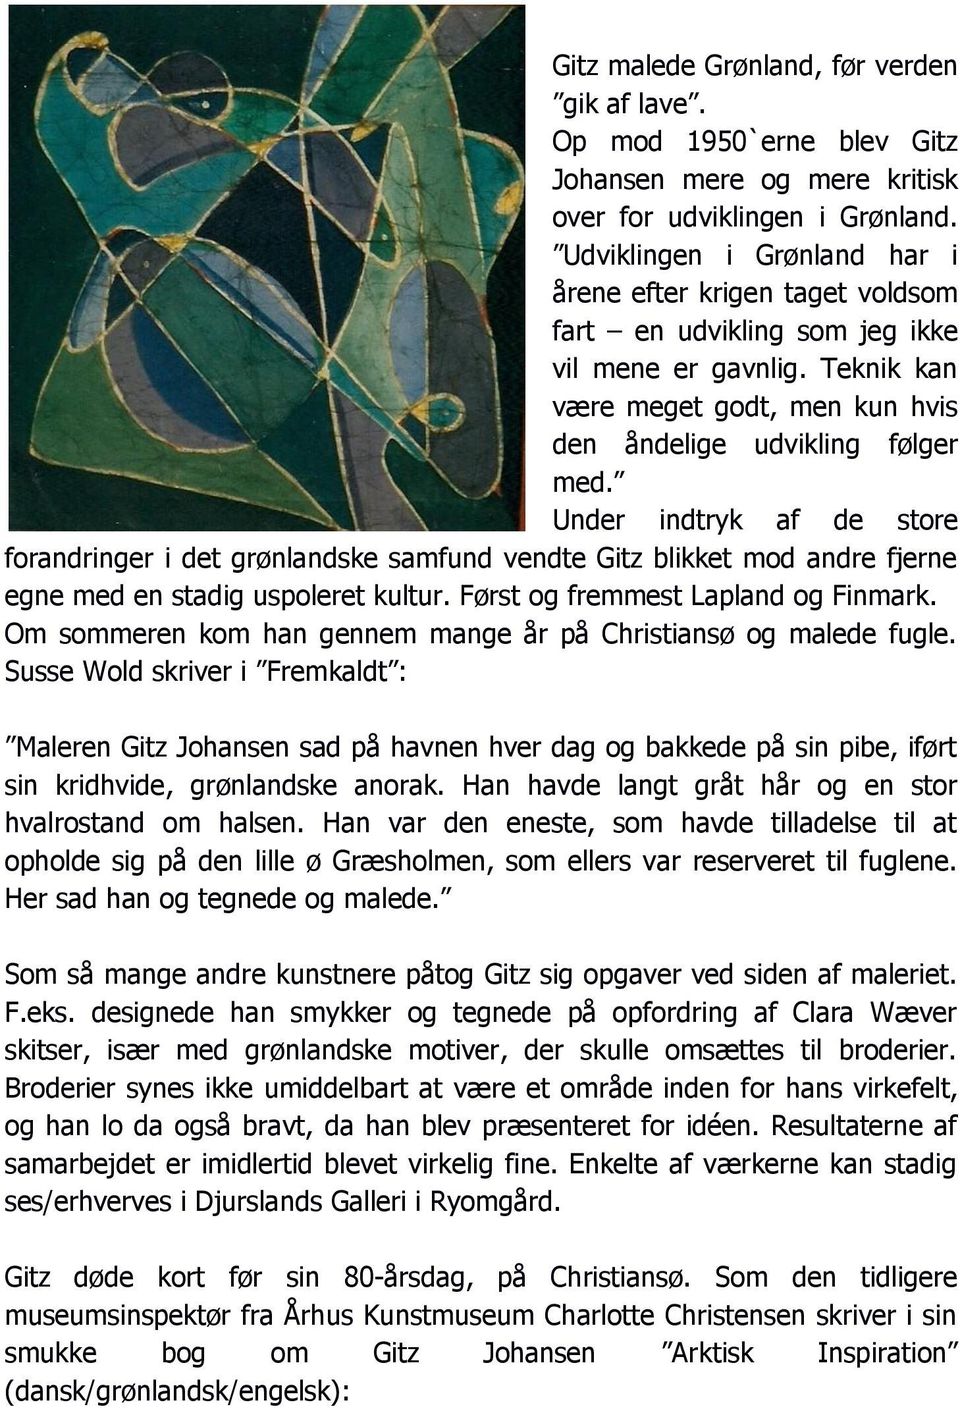 Under indtryk af de store forandringer i det grønlandske samfund vendte Gitz blikket mod andre fjerne egne med en stadig uspoleret kultur. Først og fremmest Lapland og Finmark.